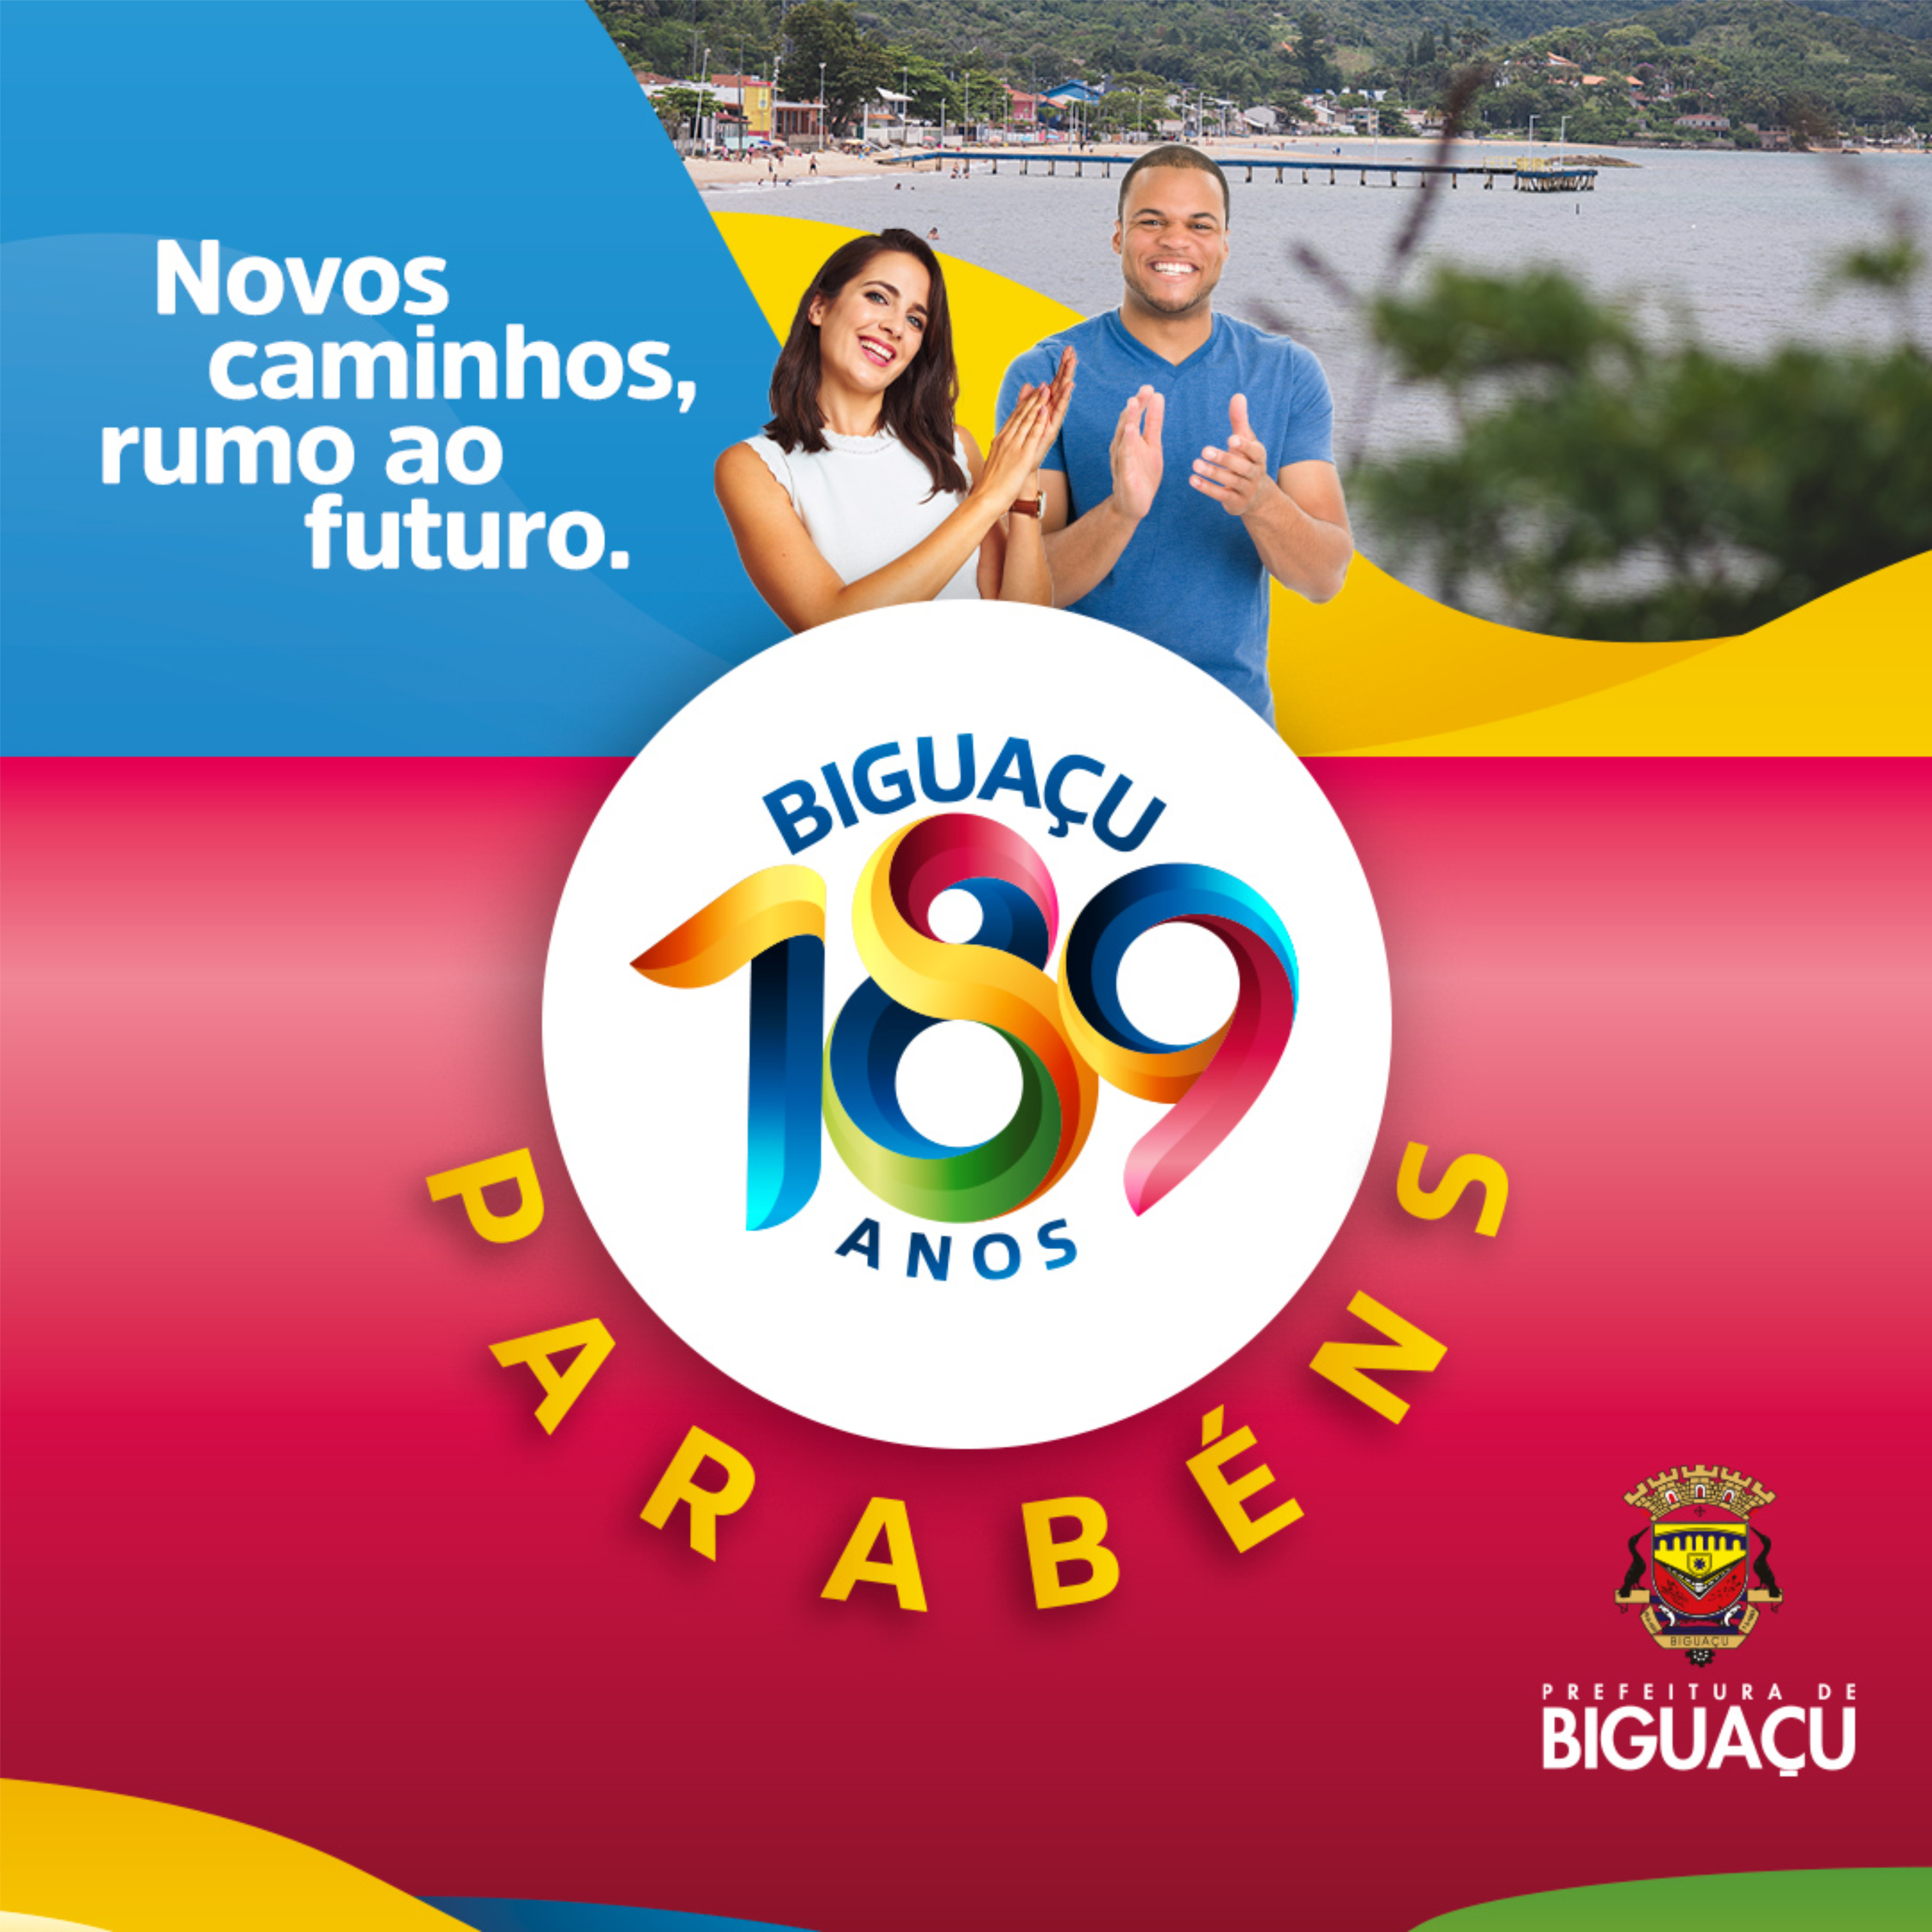 Encontro do dia 1 e 3 de novembro de 2016 PNAIC- Município de Biguaçu